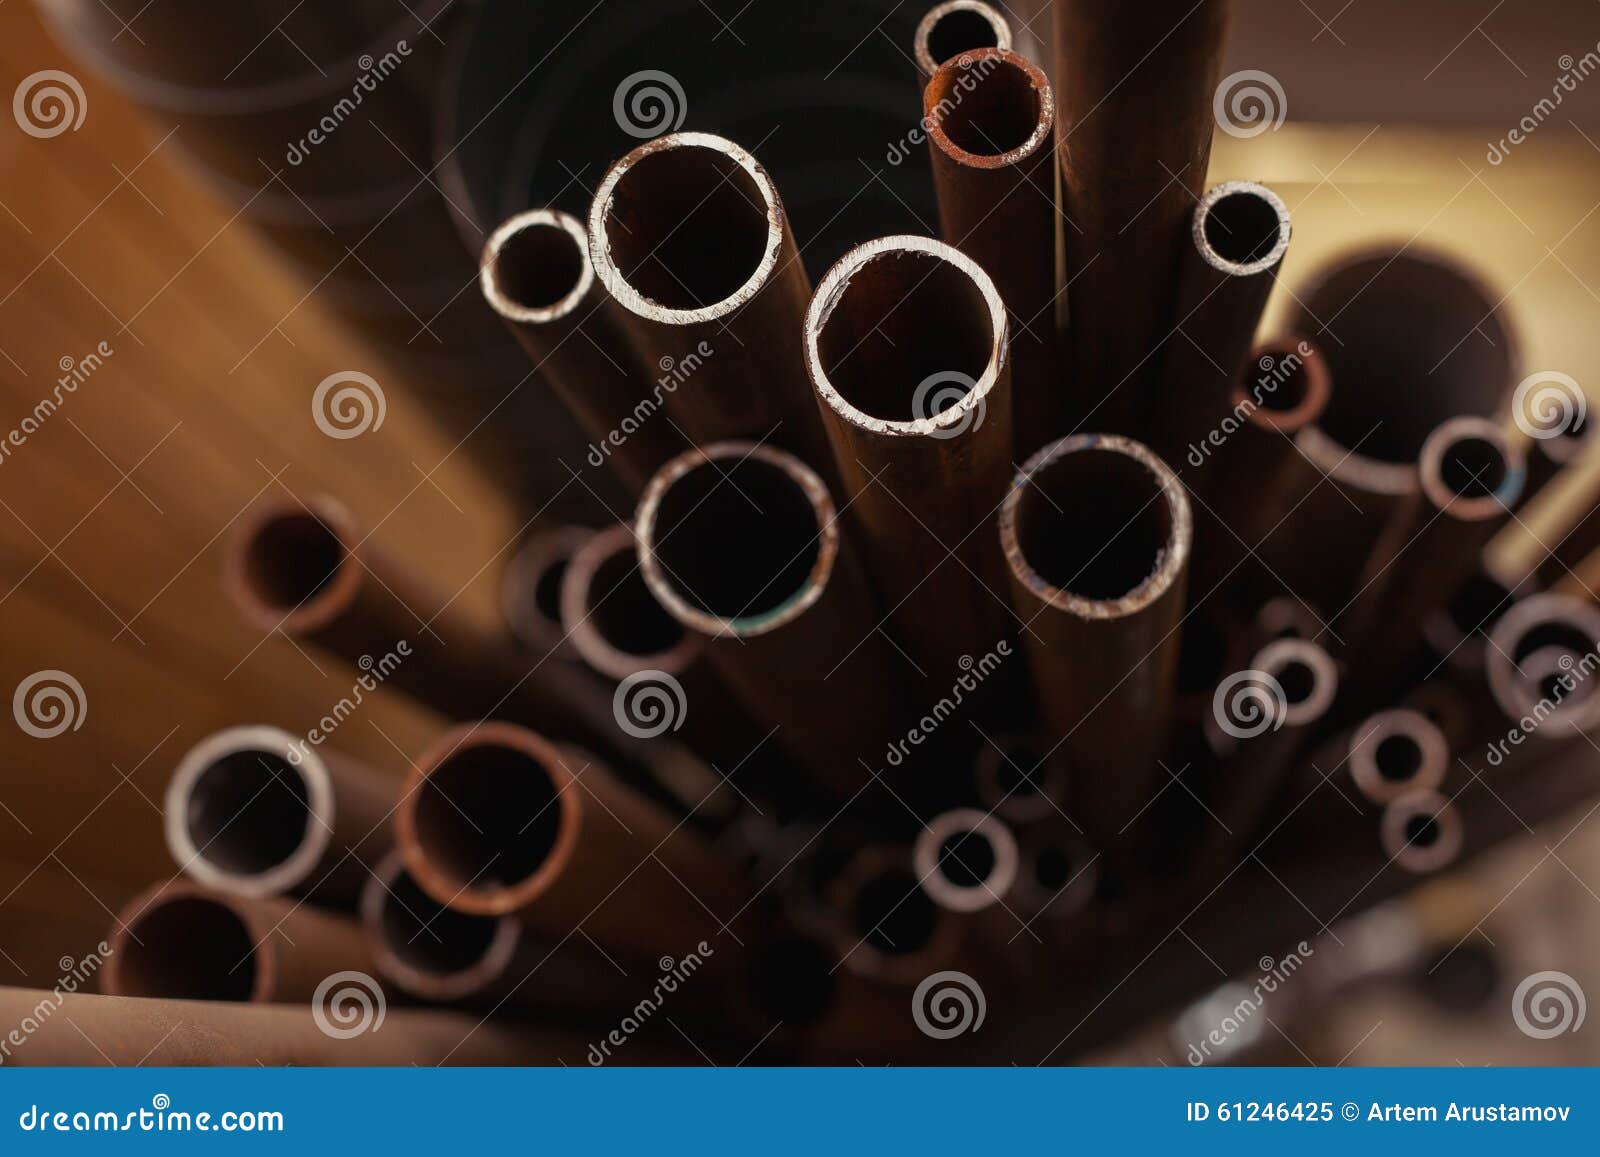 many pipes